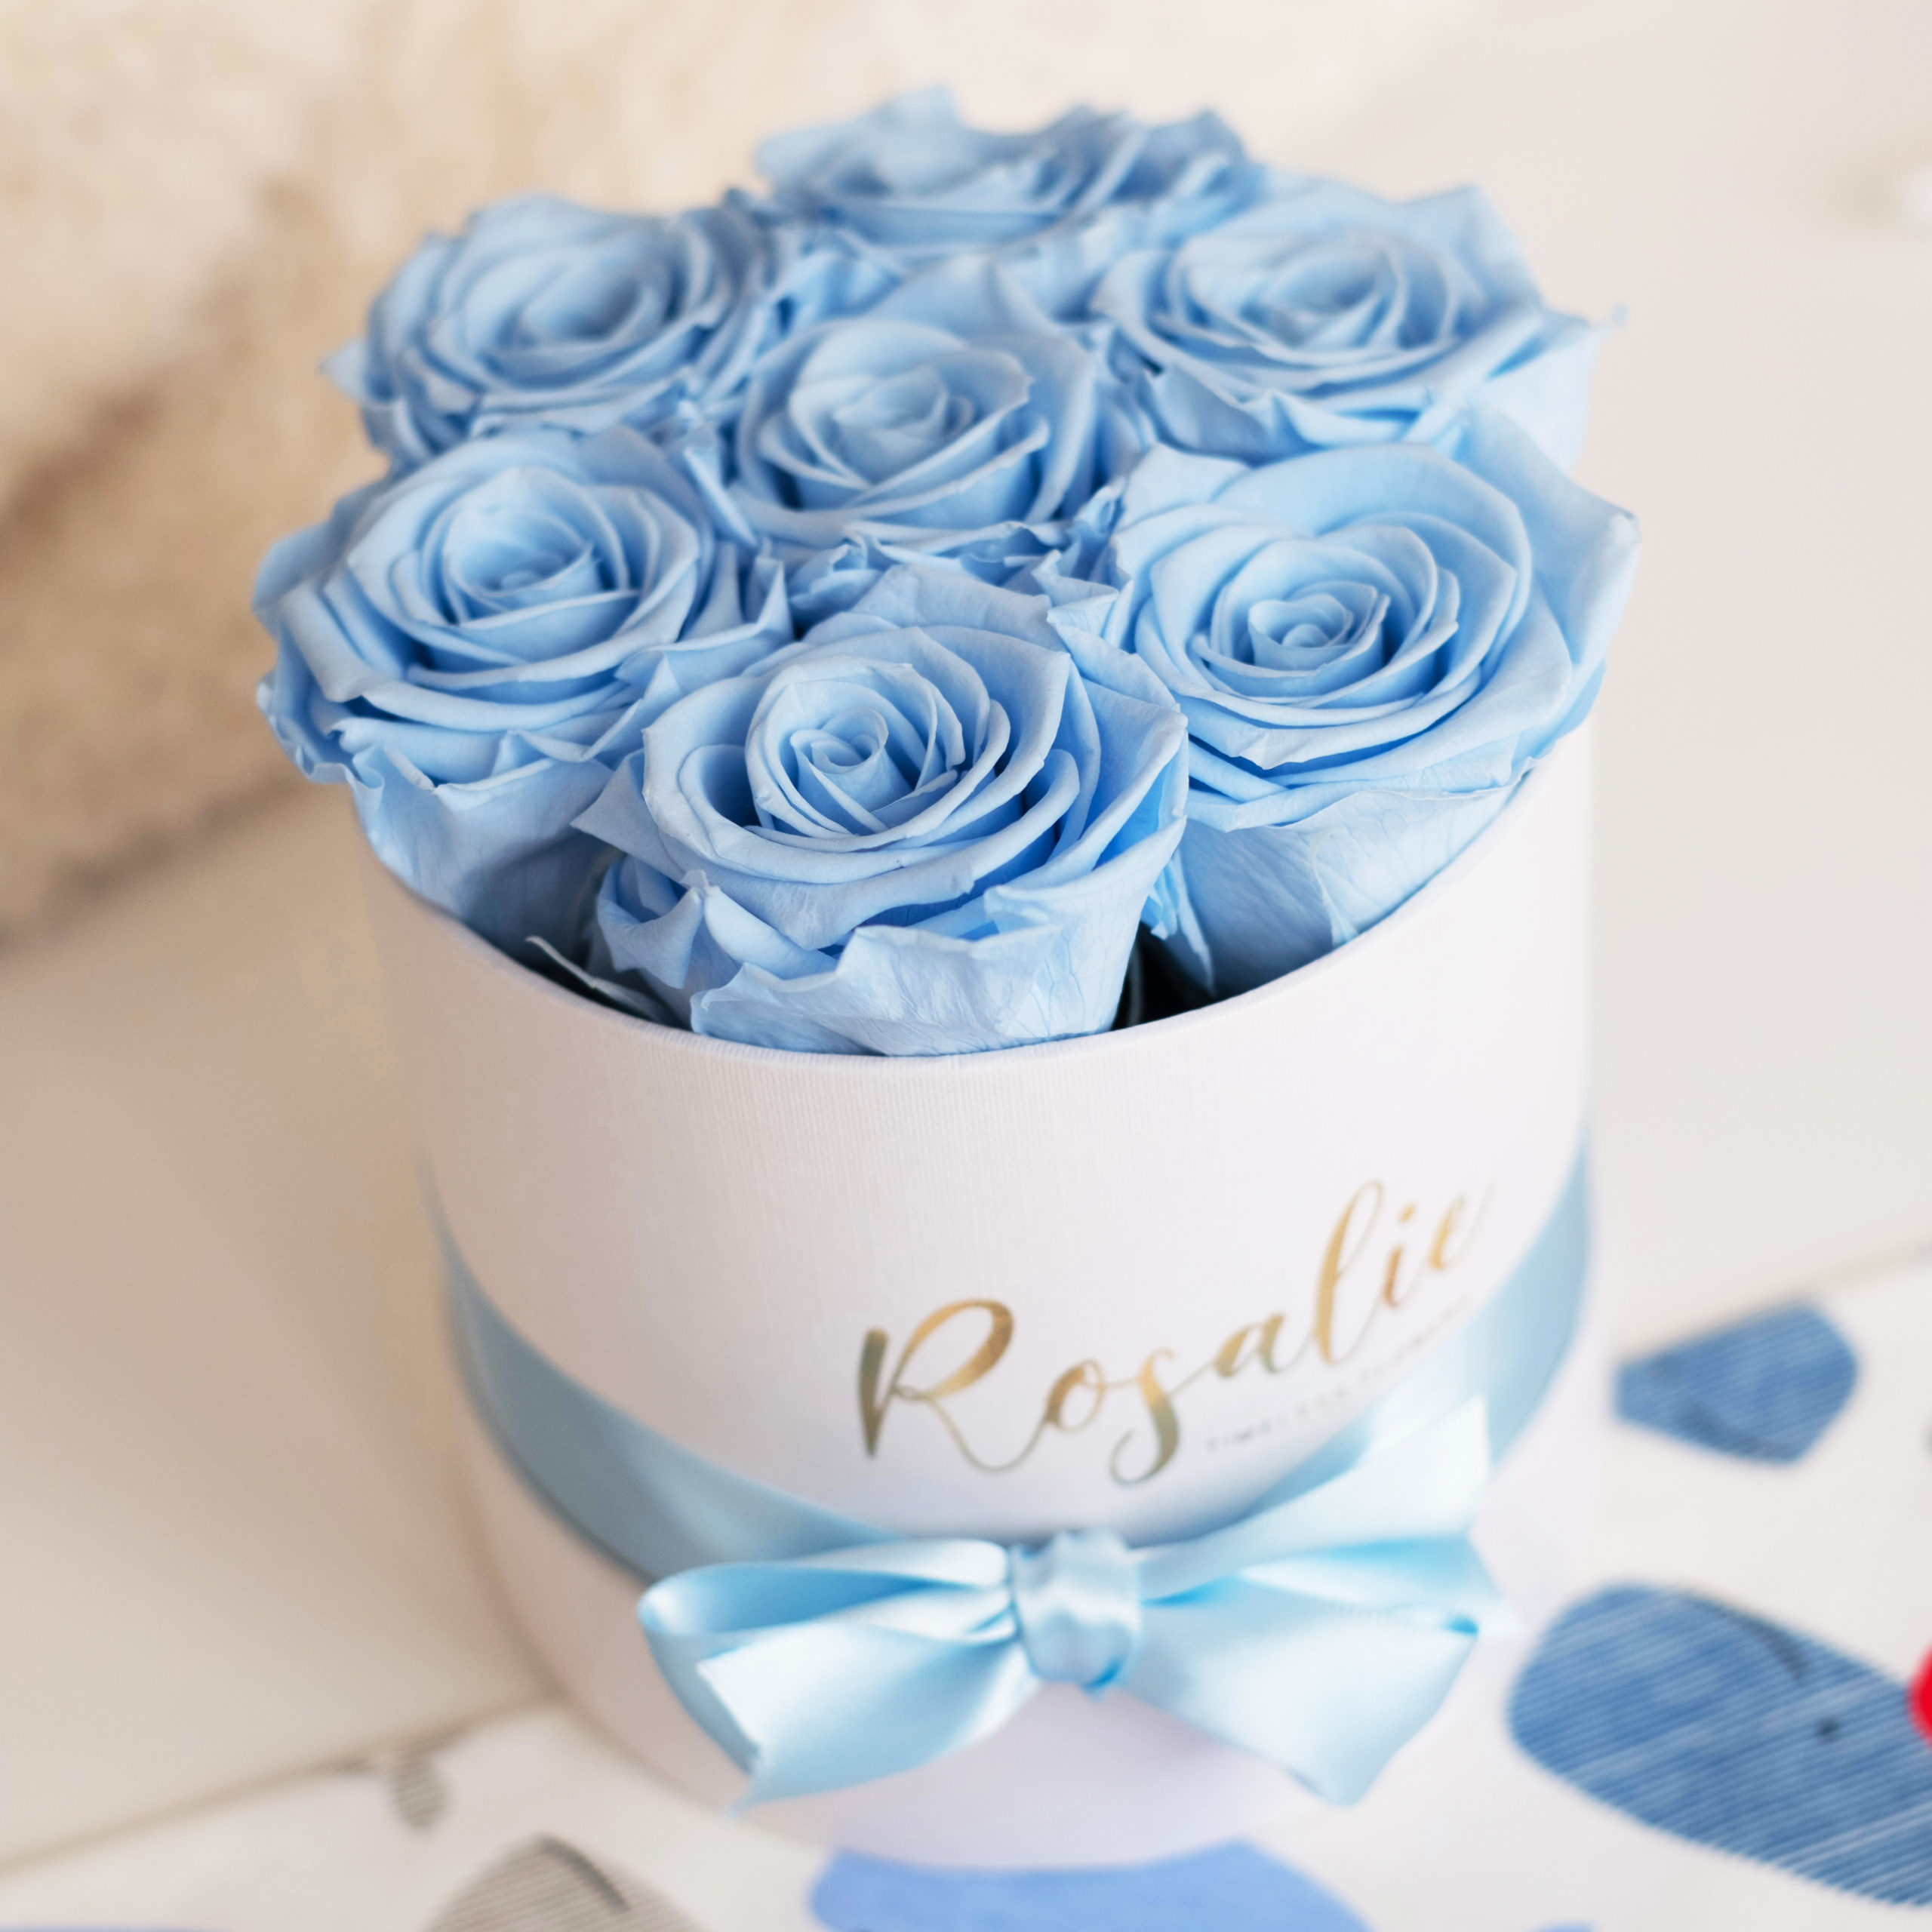 scatola tonda con 7 rose stabilizzate di color azzurro e nastro di raso azzurro attorno. Su tavolo bianco. Vista dall'alto.